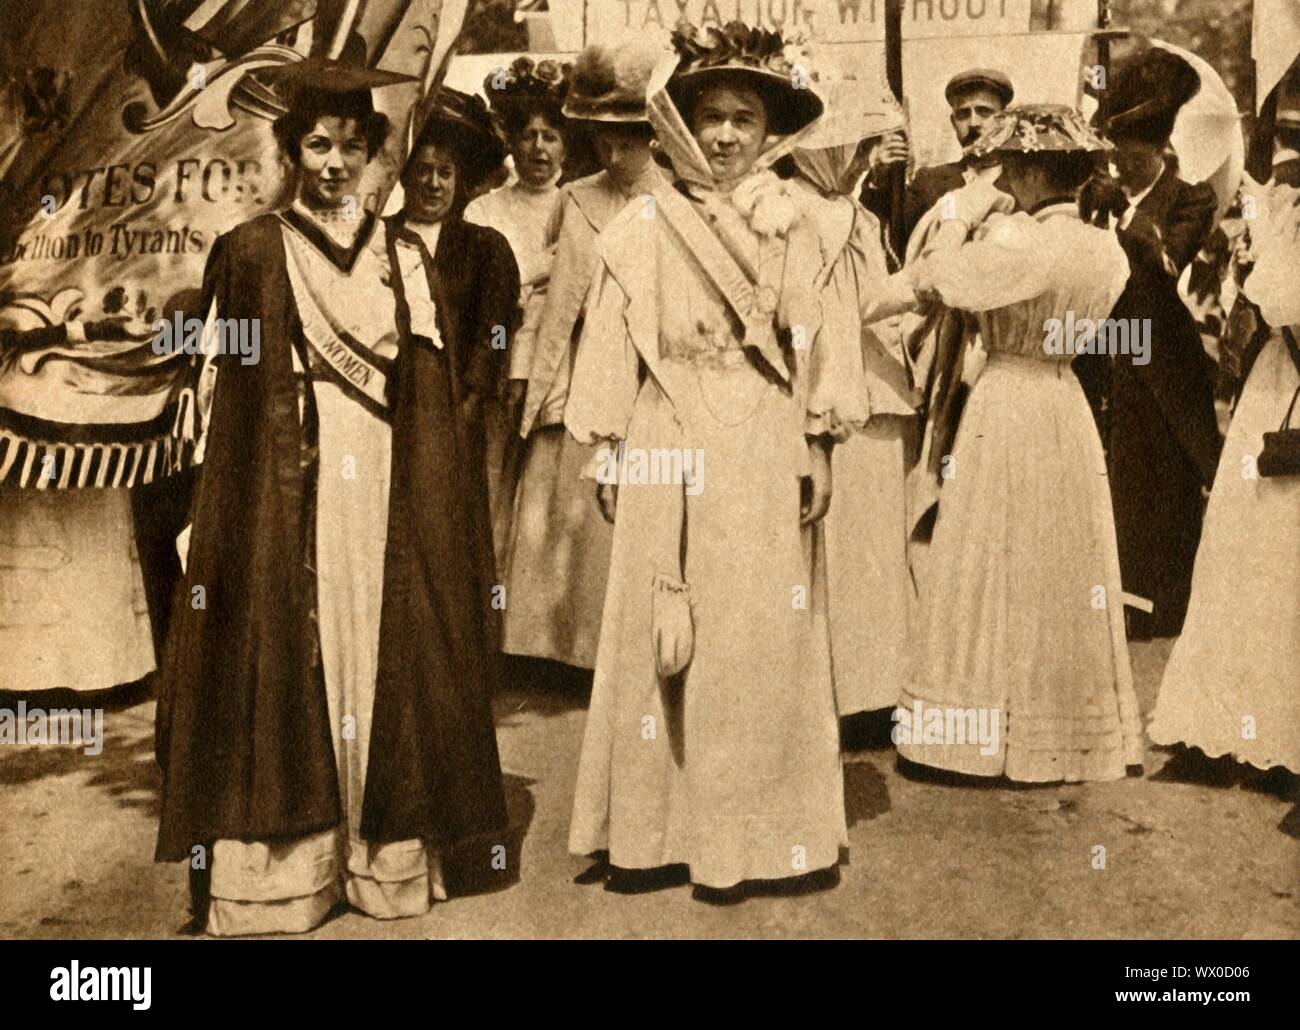 Christabel Pankhurst e Emmeline Pethick-Lawrence, Hyde Park, Londra, 21 giugno 1908, (1933). Suffragio britannico gli attivisti Christabel Pankhurst (1880-1958) e Emmeline Pethick-Lawrence (1867-1954) in un rally su "Donne di domenica dell'. Suffragettes protestato attraverso l'azione diretta e di disobbedienza civile, ottenendo suffragio parziale nel 1918. Non è stato fino al 1928 che tutte le donne gainied infine il diritto di voto. Da "il corteo del secolo". [Odhams Press Ltd, 1933] Foto Stock